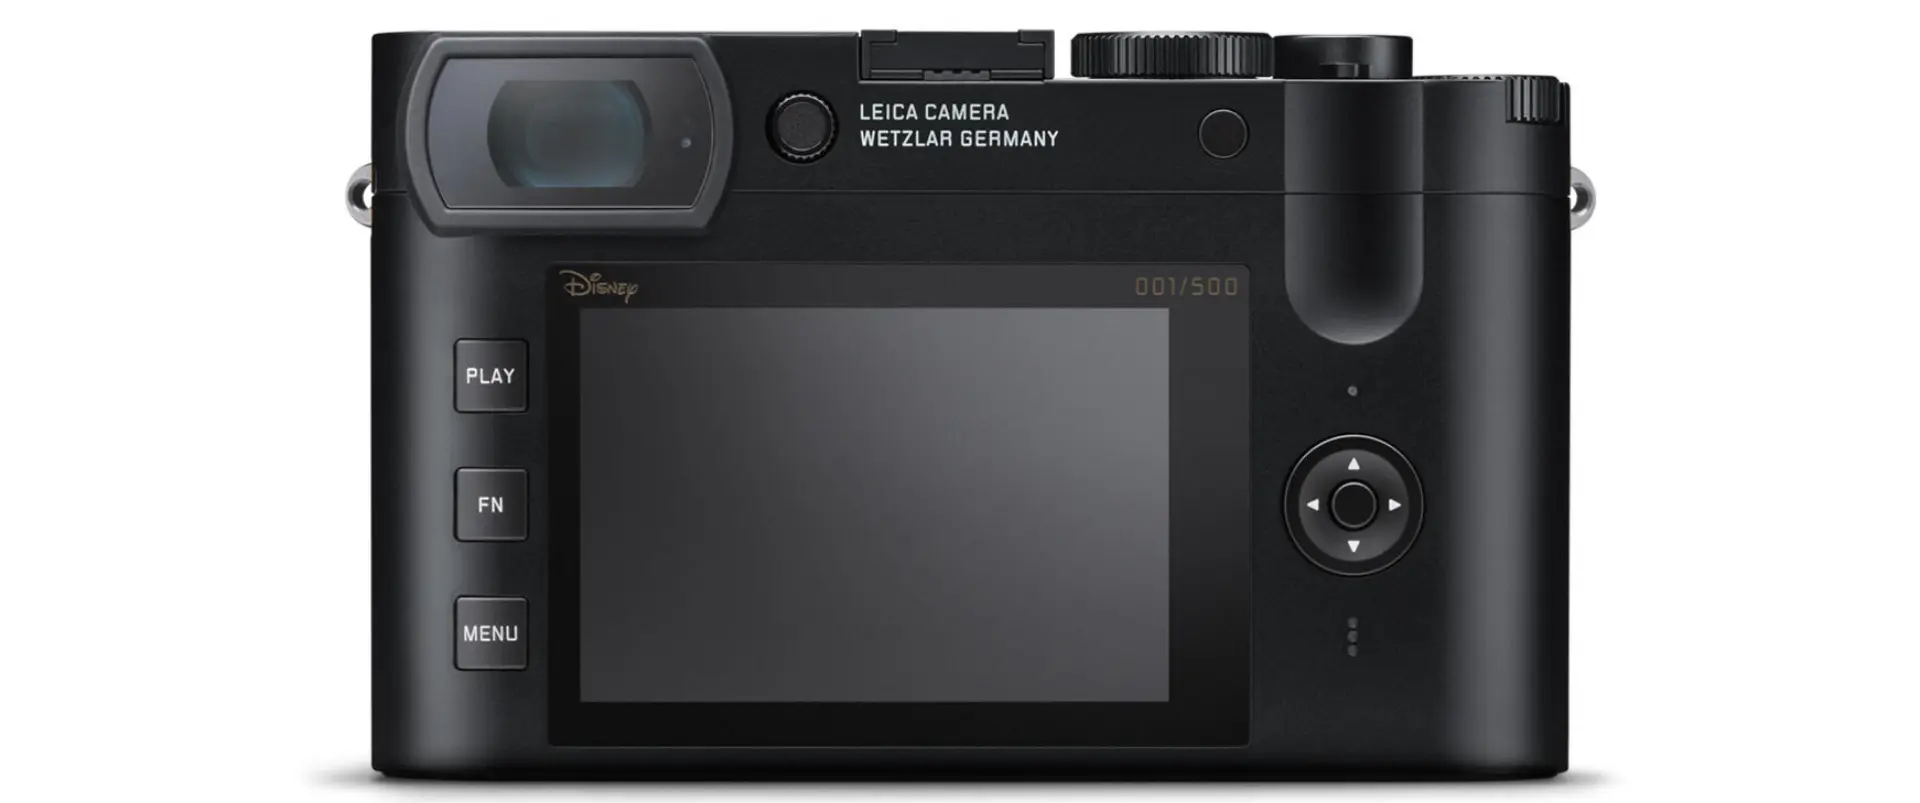 Así es la cámara Leica en celebración por los 100 años de Disney